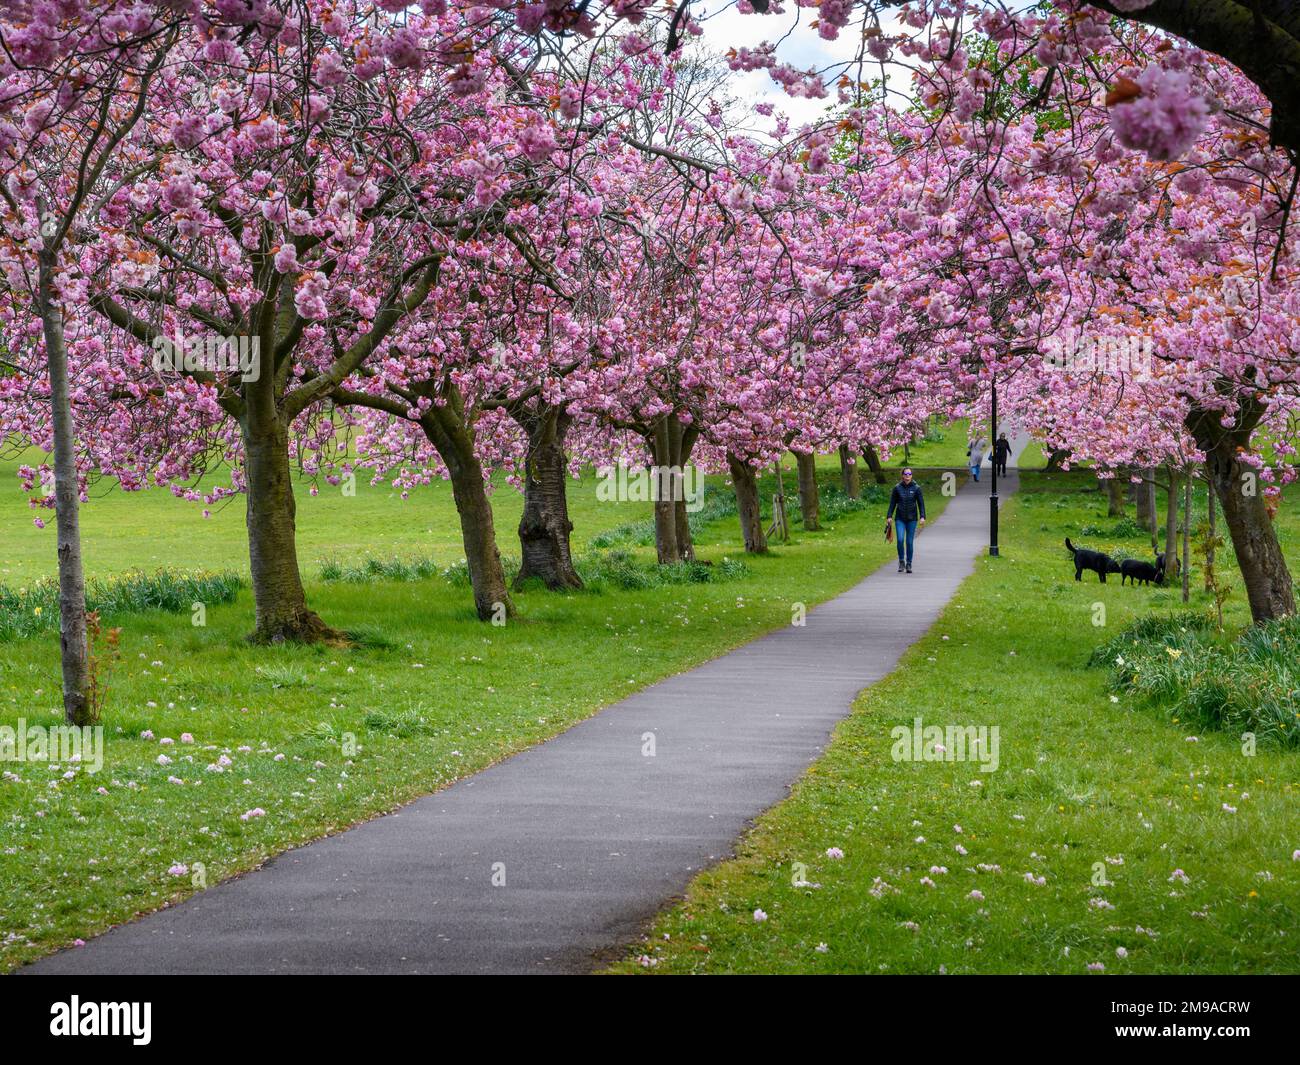 Viale panoramico dell'albero (fiore rosa colorato in fiore, rami che si stendono a sbalzo sentiero, cane camminatore, primavera giorno-out) - il randagio, Harrogate, Inghilterra, Regno Unito. Foto Stock